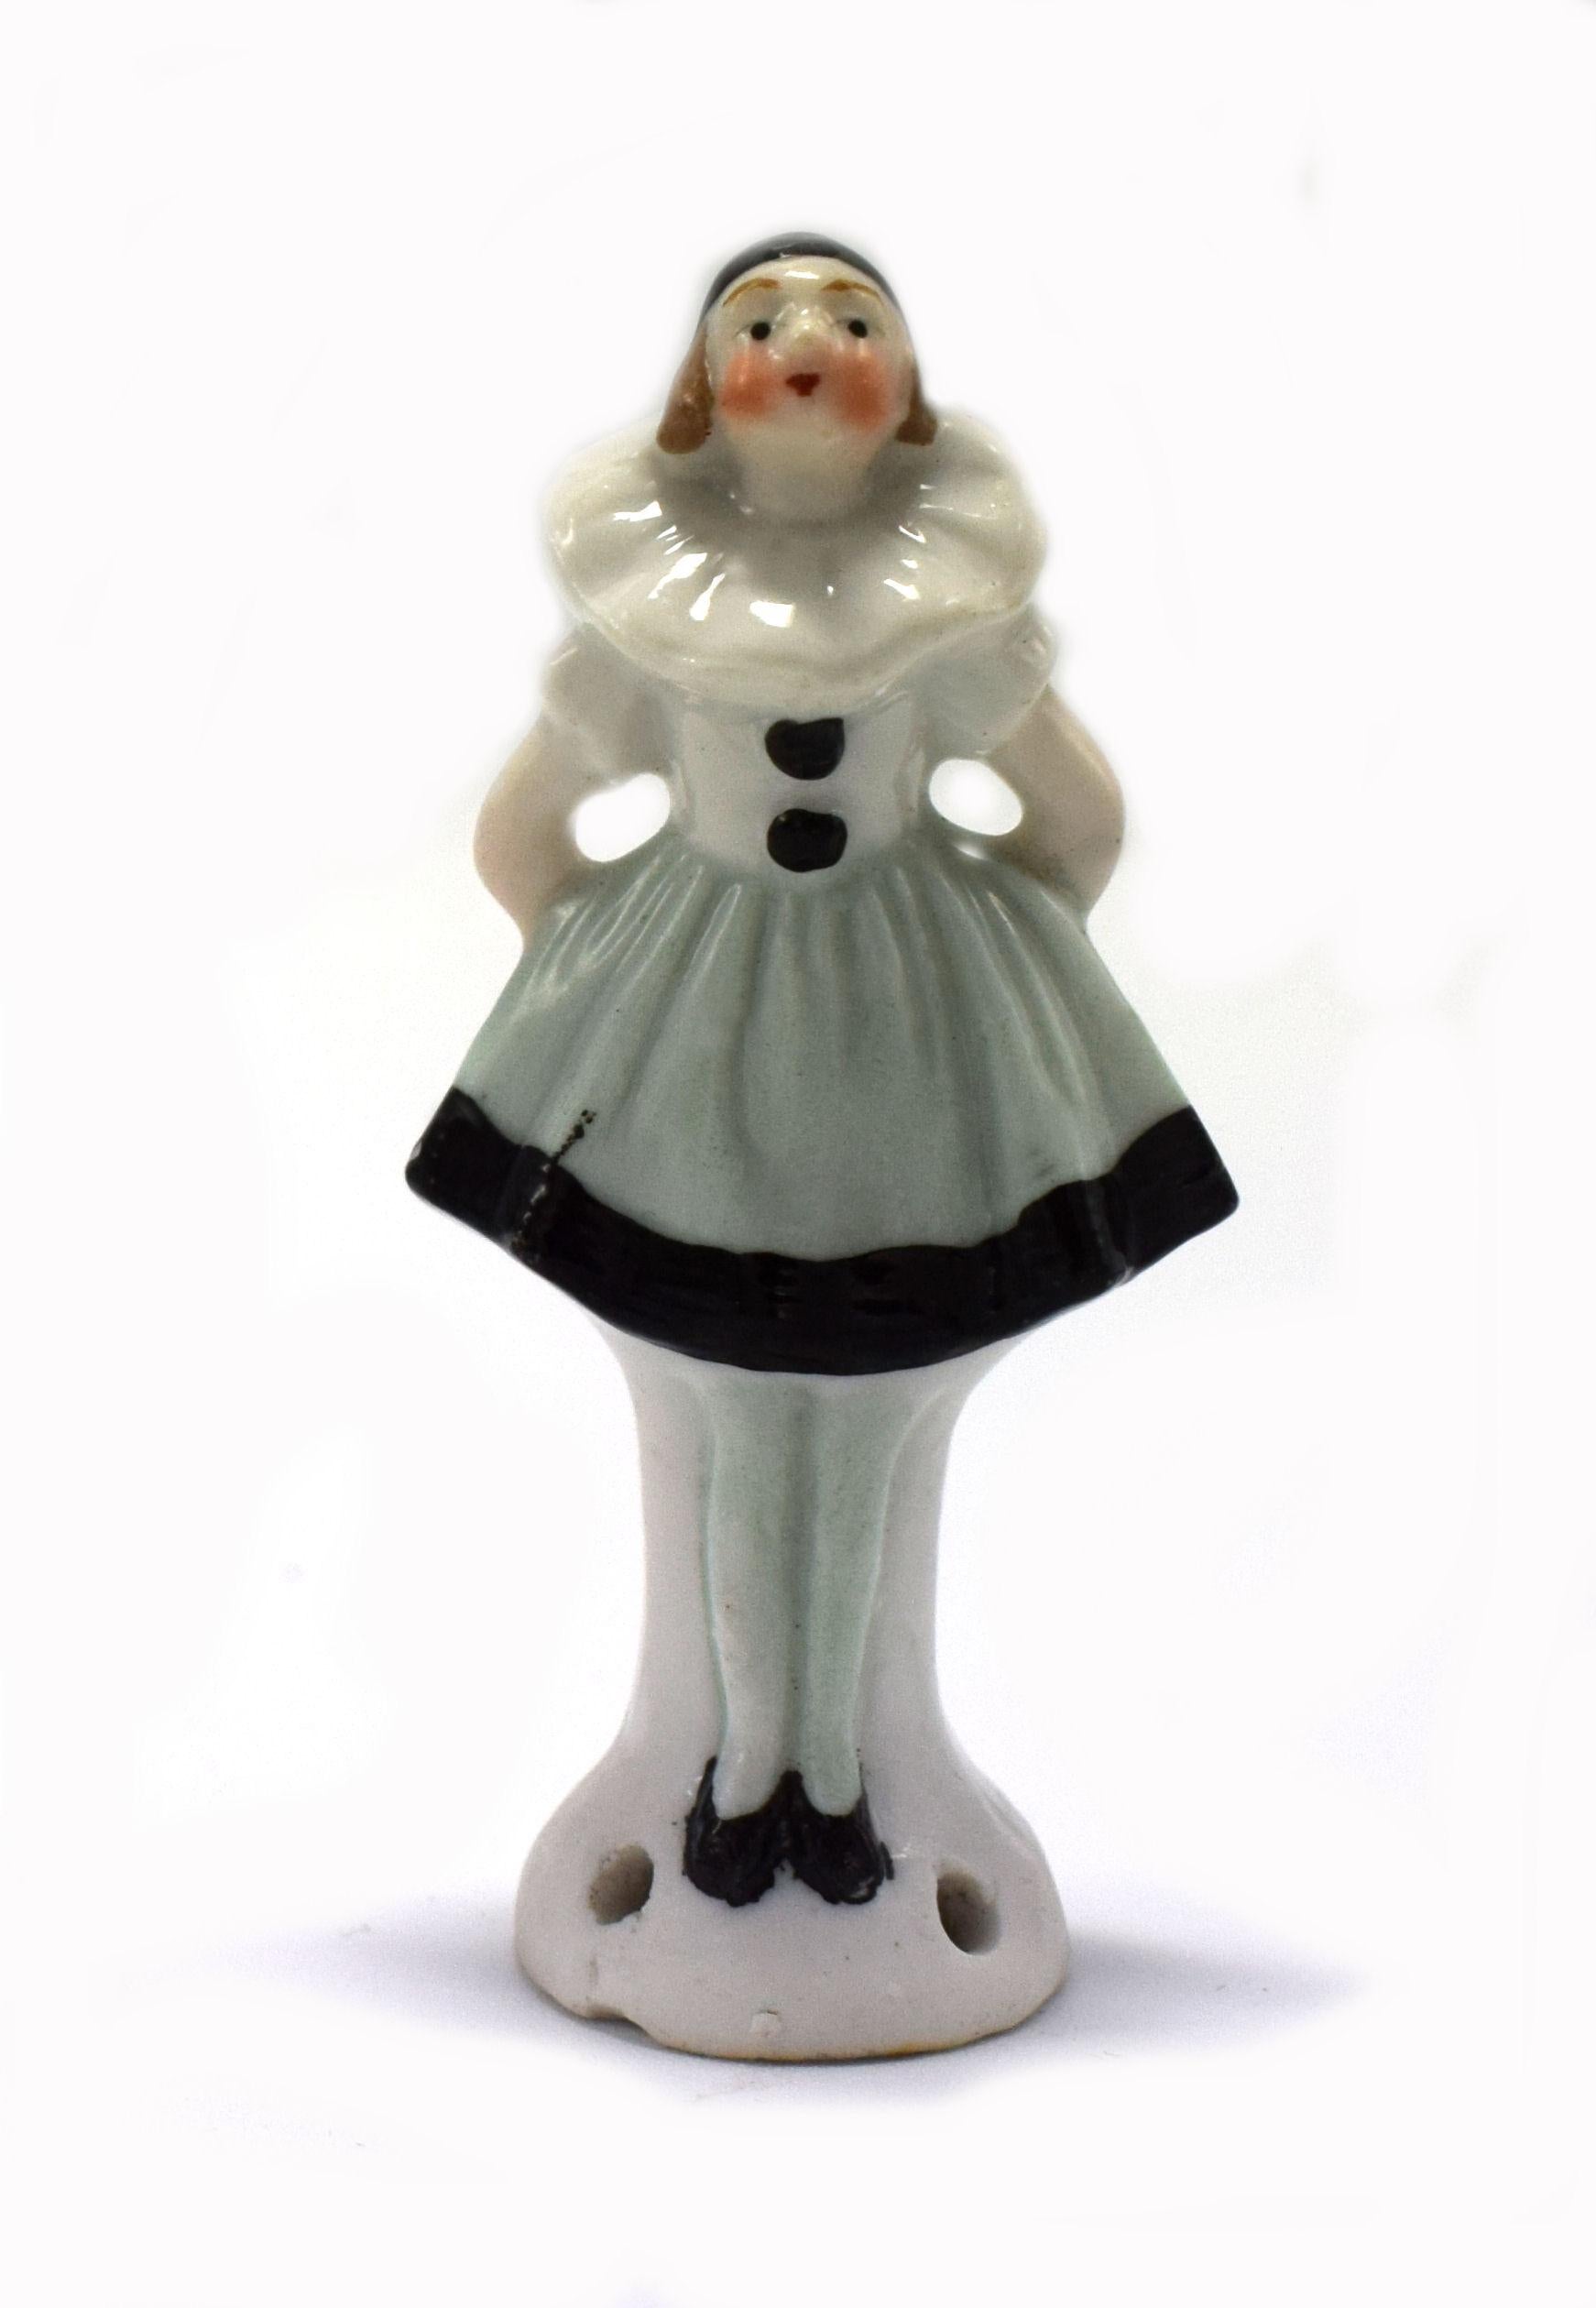 Wunderbare 1930er Jahre Art Deco und ganz charmant voll figürlichen Nadelkissen halbe Puppe, die von der deutschen Fabrik von Carl Schneider hergestellt wurde, steht sie eine petite 6,7 cm in der Höhe. Diese wunderbare kleine Halbpuppe hat die Form